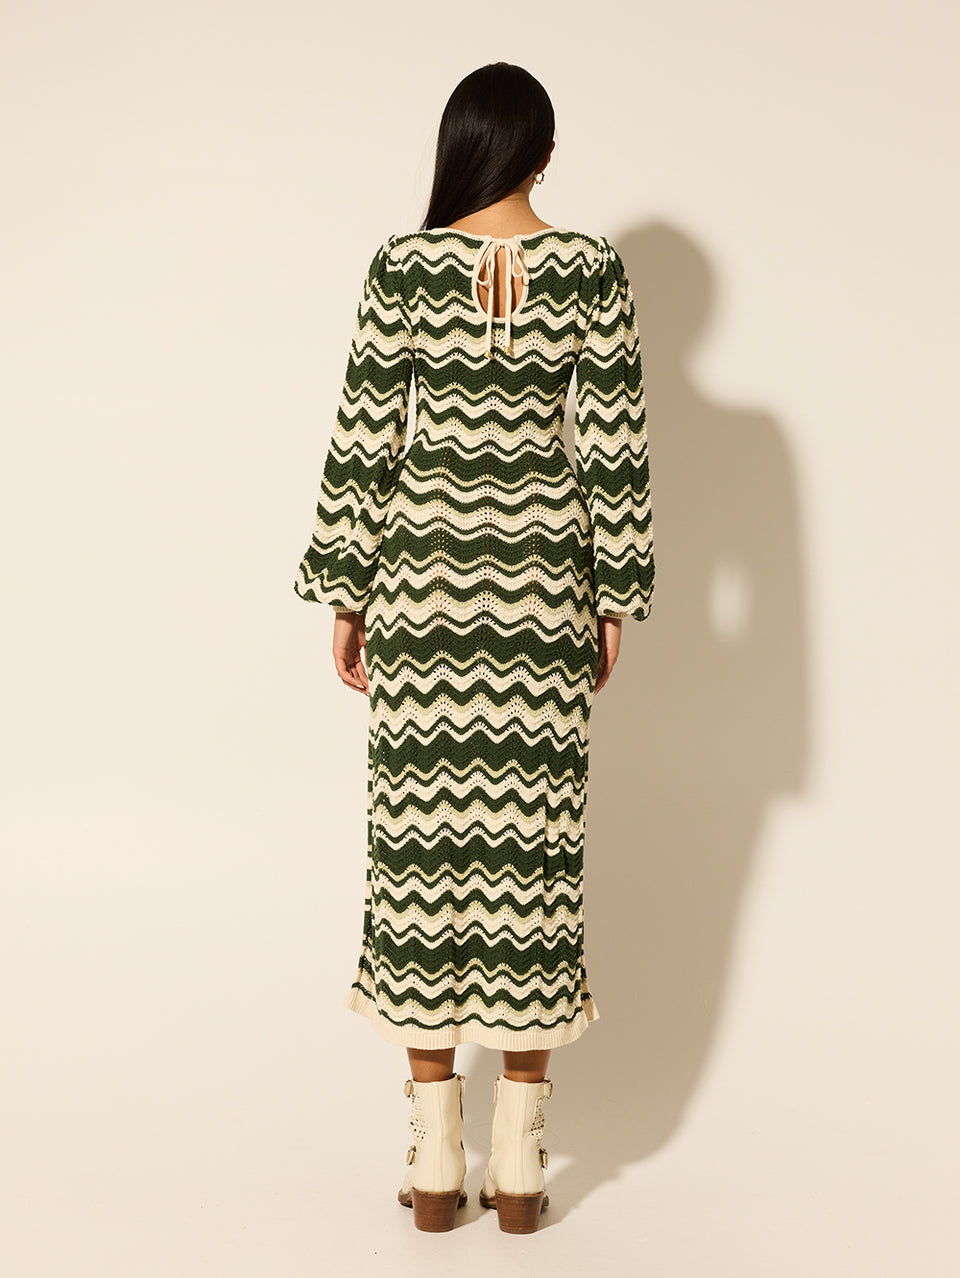 Marcella Knit Midi Dress KIVARI | Model wears green and cream knit midi dress back view